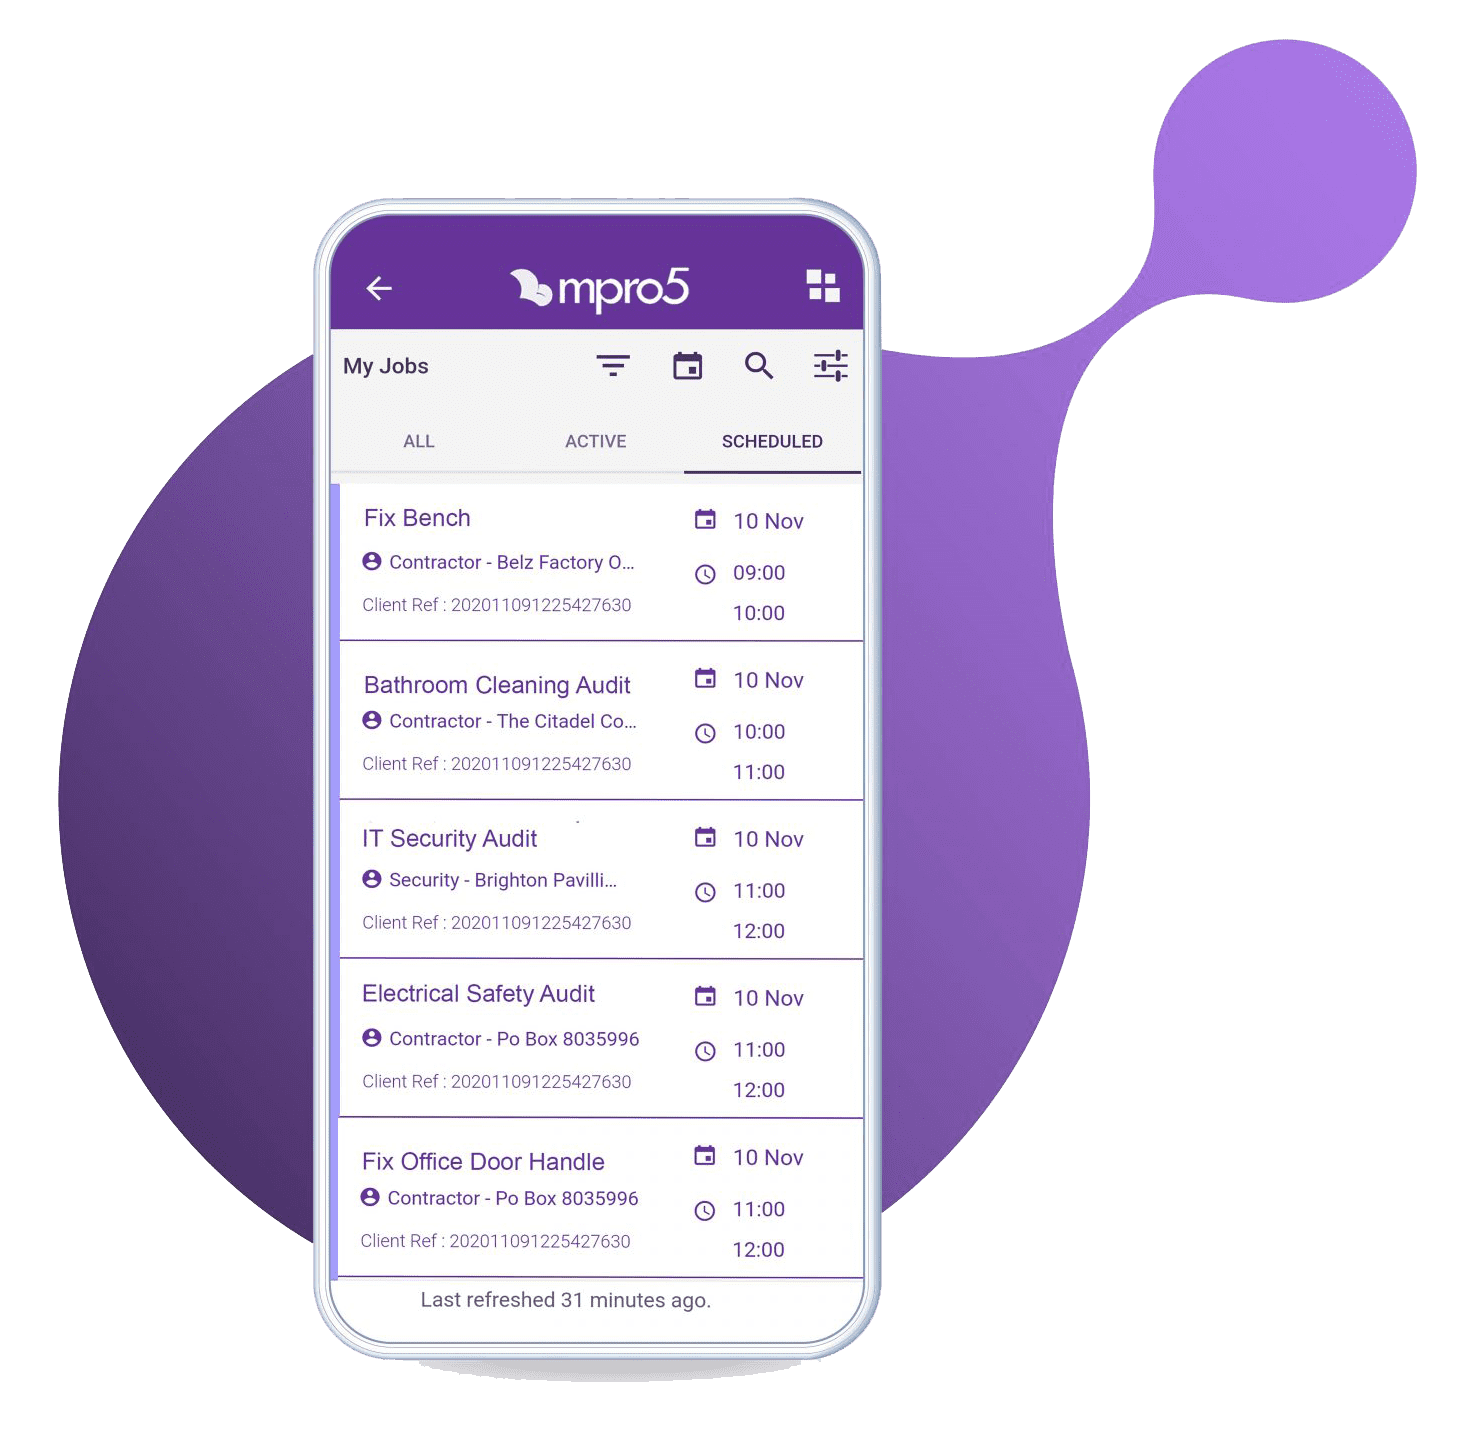 Jobs-List-Purple-Blob-Background-mpro5-1536x1536-copy (2)